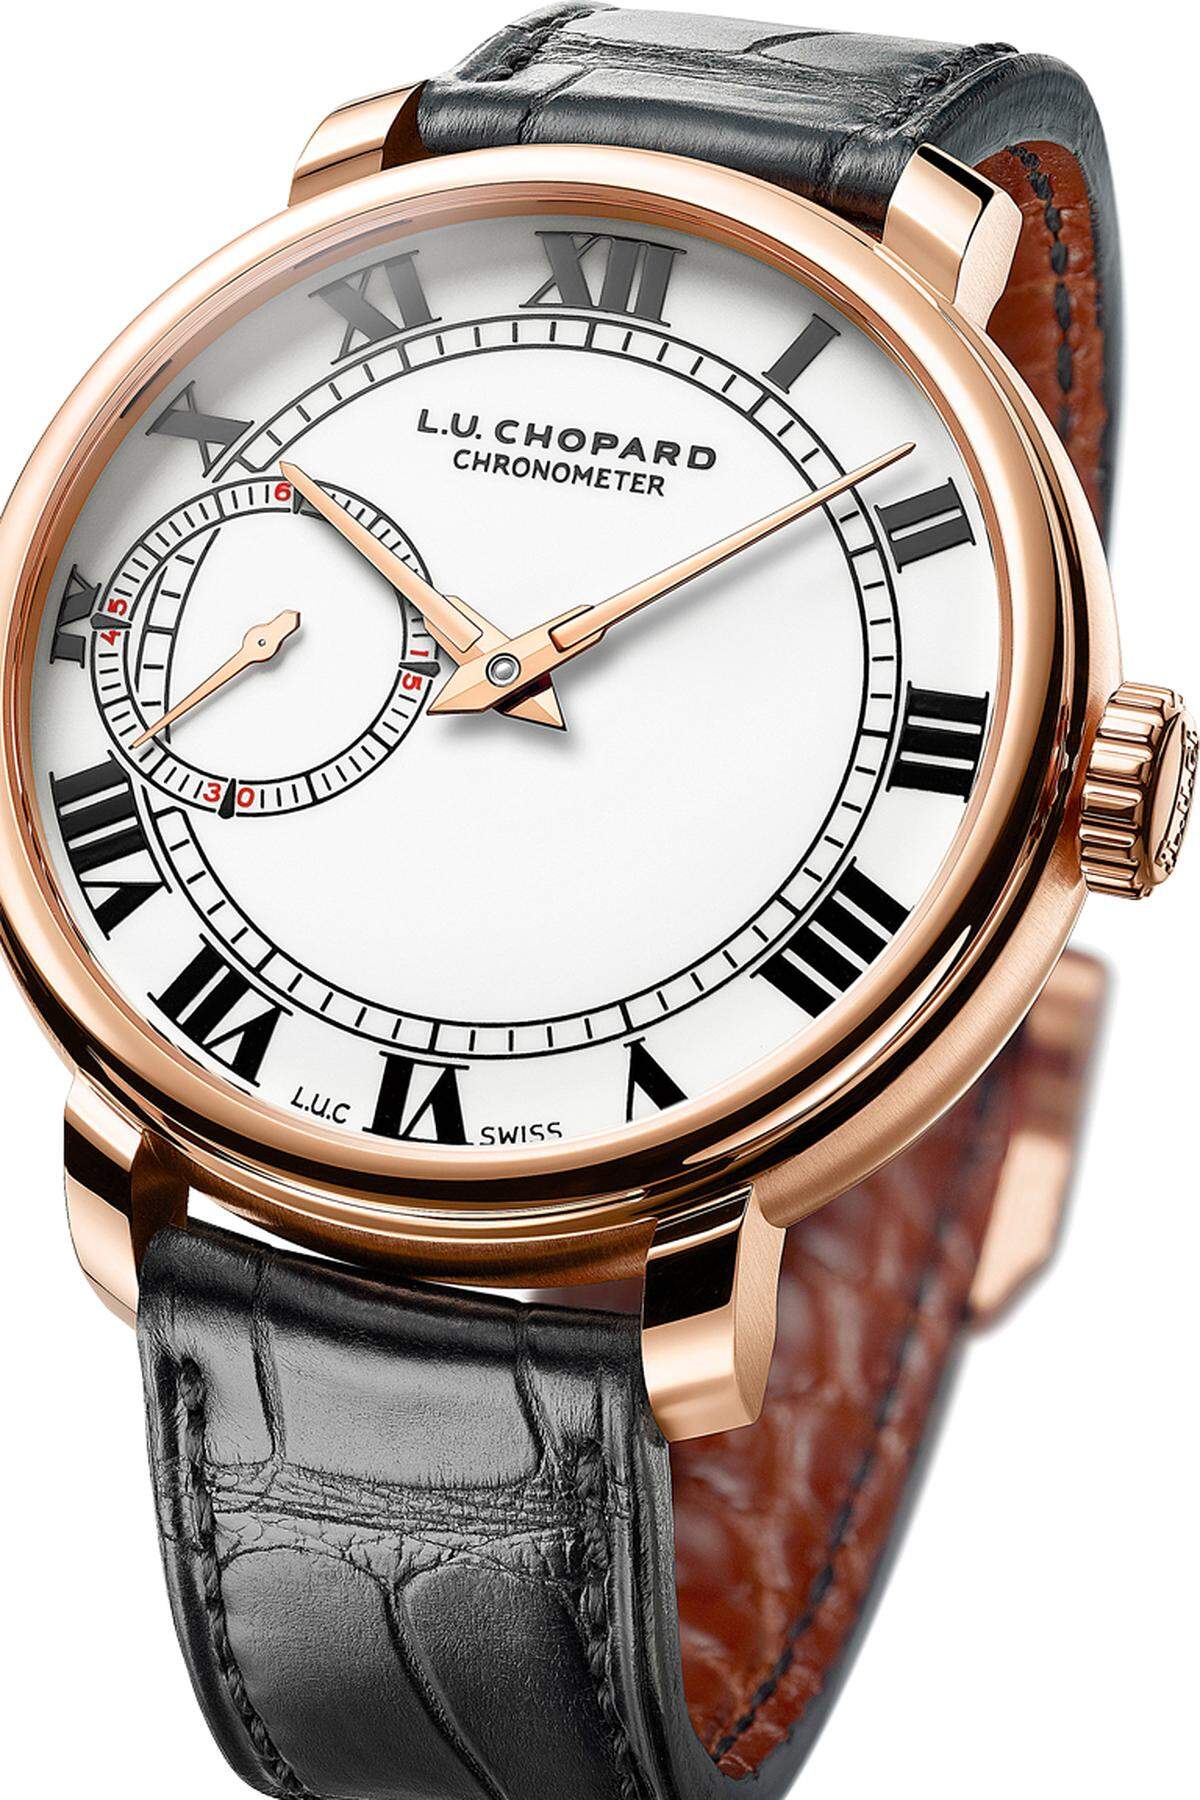 Dieser Armband-Chronometer ist eine Reminiszenz an eine Chopard-Taschenuhr der 1960er-Jahre. Das wunderschön ausgeführte und aufwendig dekorierte Handaufzug-Kaliber ist von der COSC zertifiziert, und es trägt die Genfer Punze.